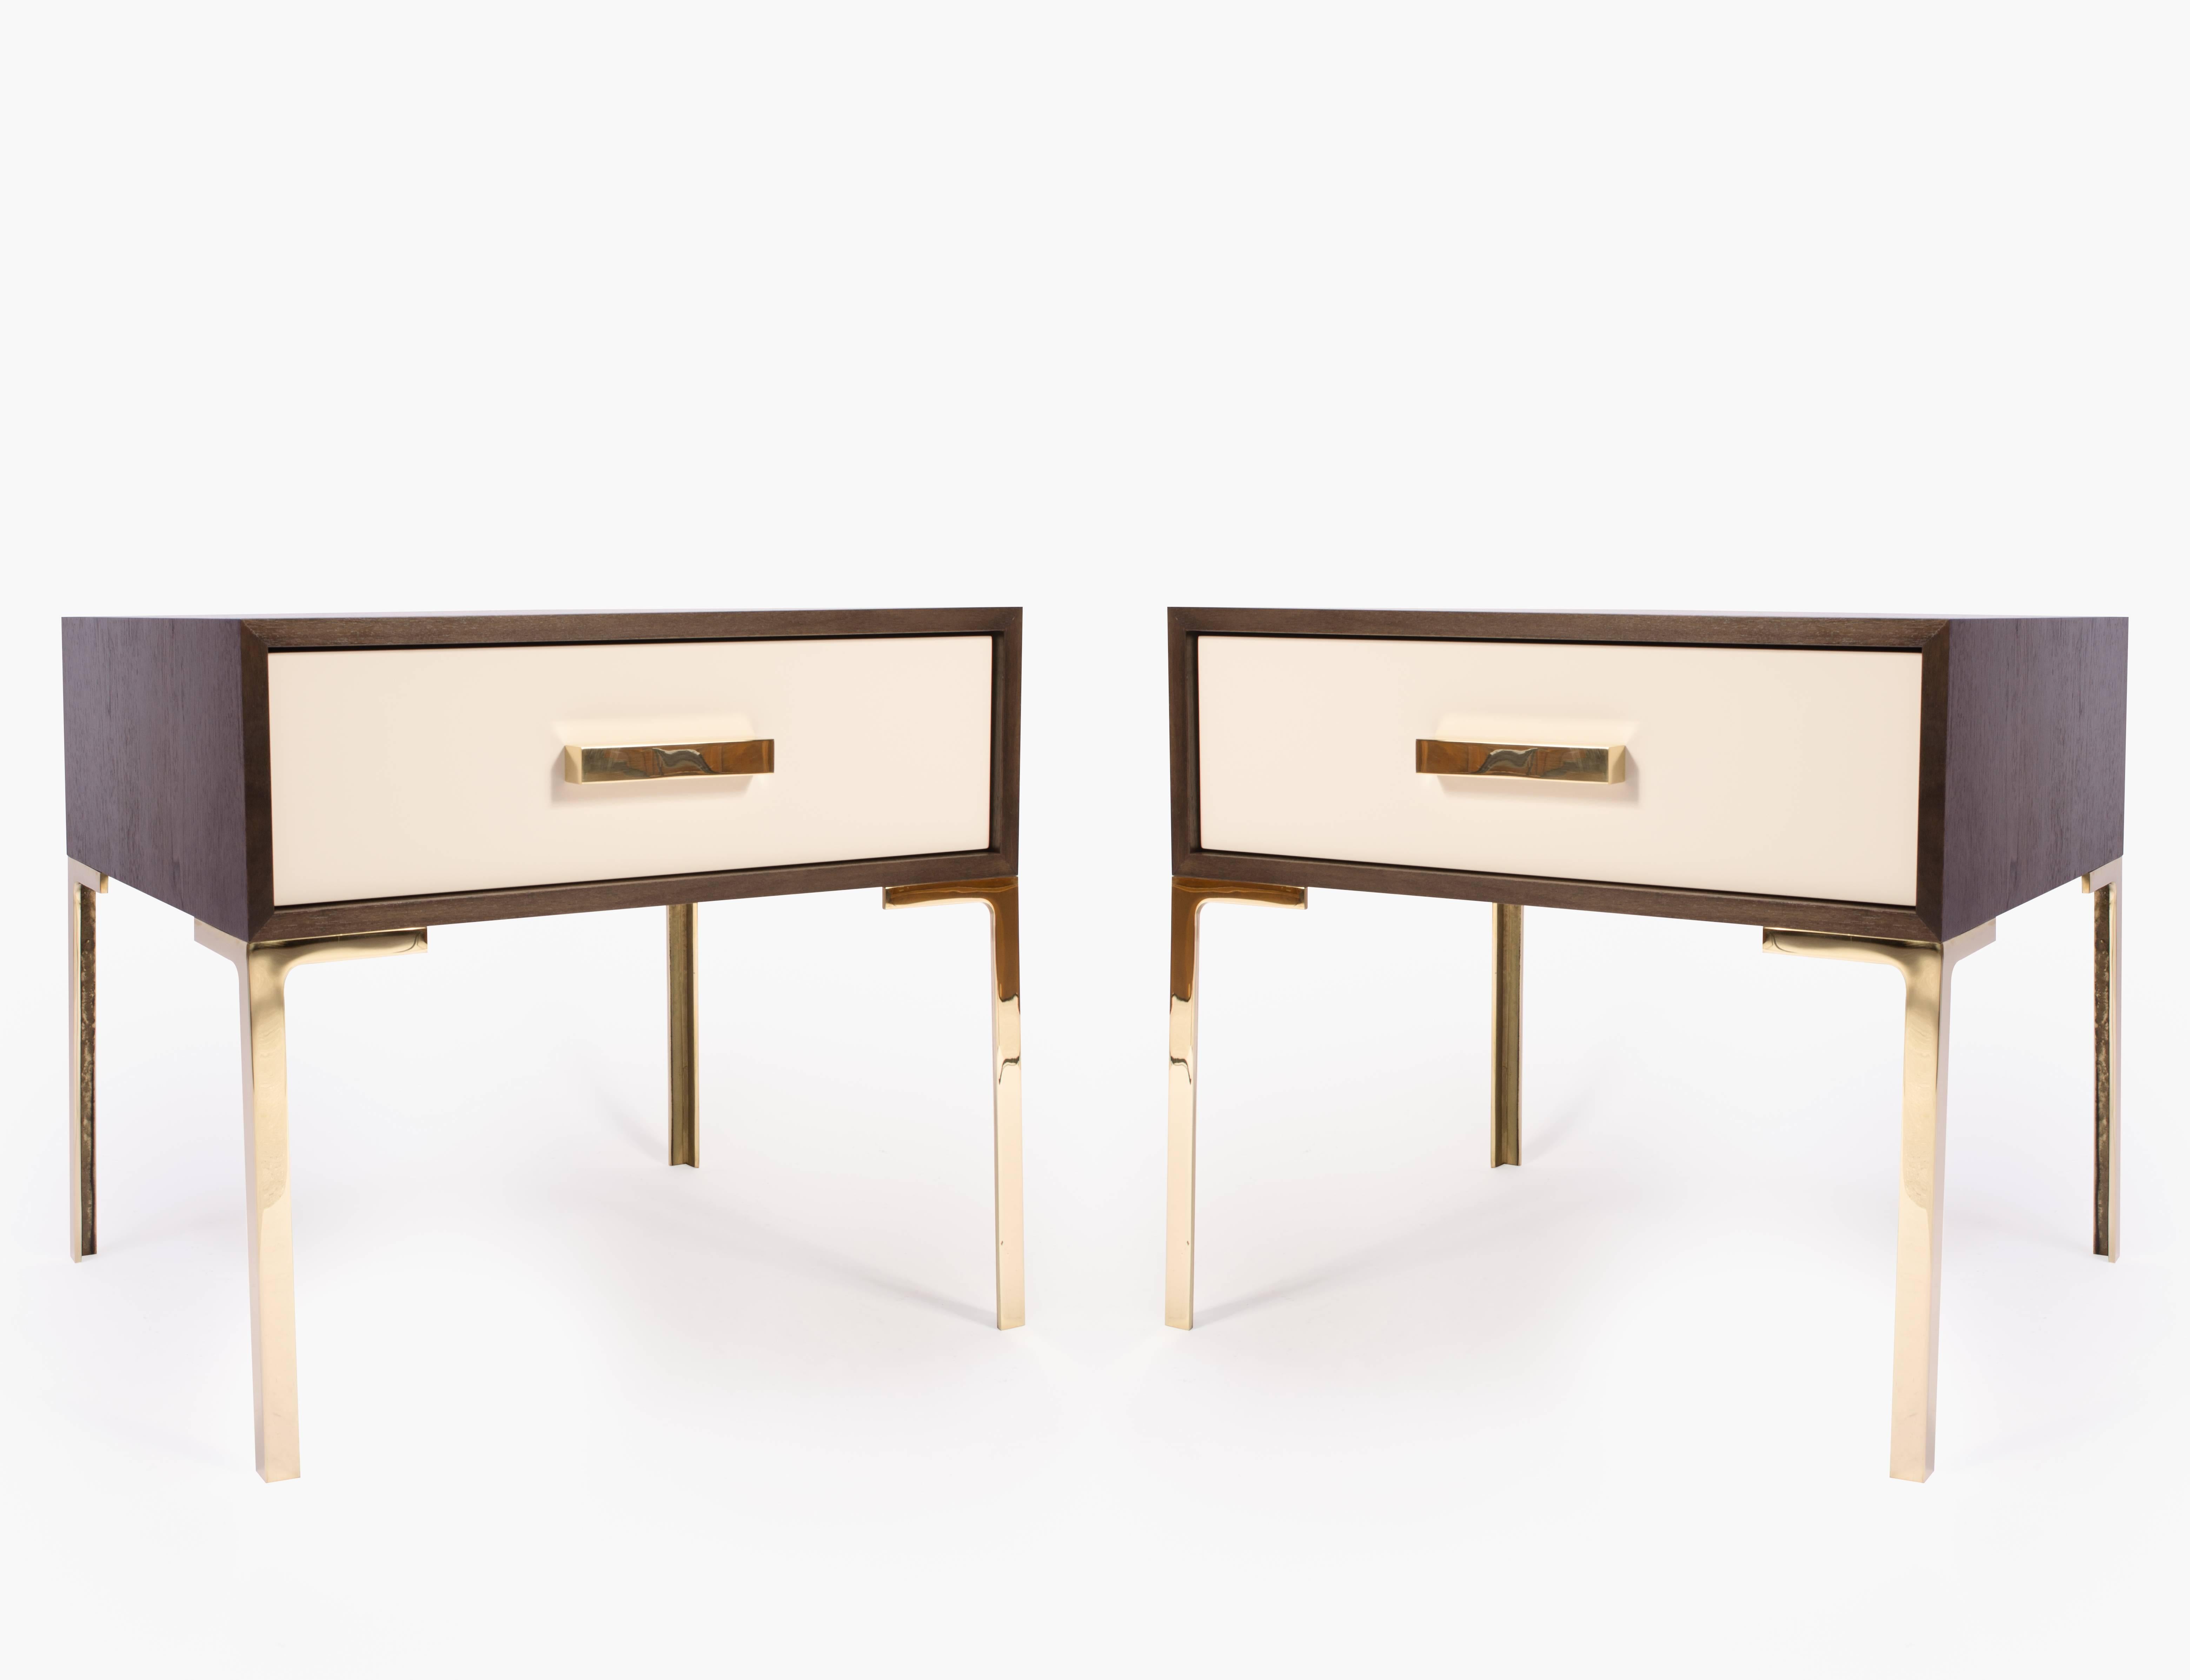 Der Nachttisch Astor ist eine beeindruckende Kreation von Montage. Sie wurden mit dem Gedanken an die Jahrhundertmitte entworfen und verkörpern zarte Proportionen und die kühne Verwendung von Materialien höchster Qualität. 

Jedes Nachtkästchen